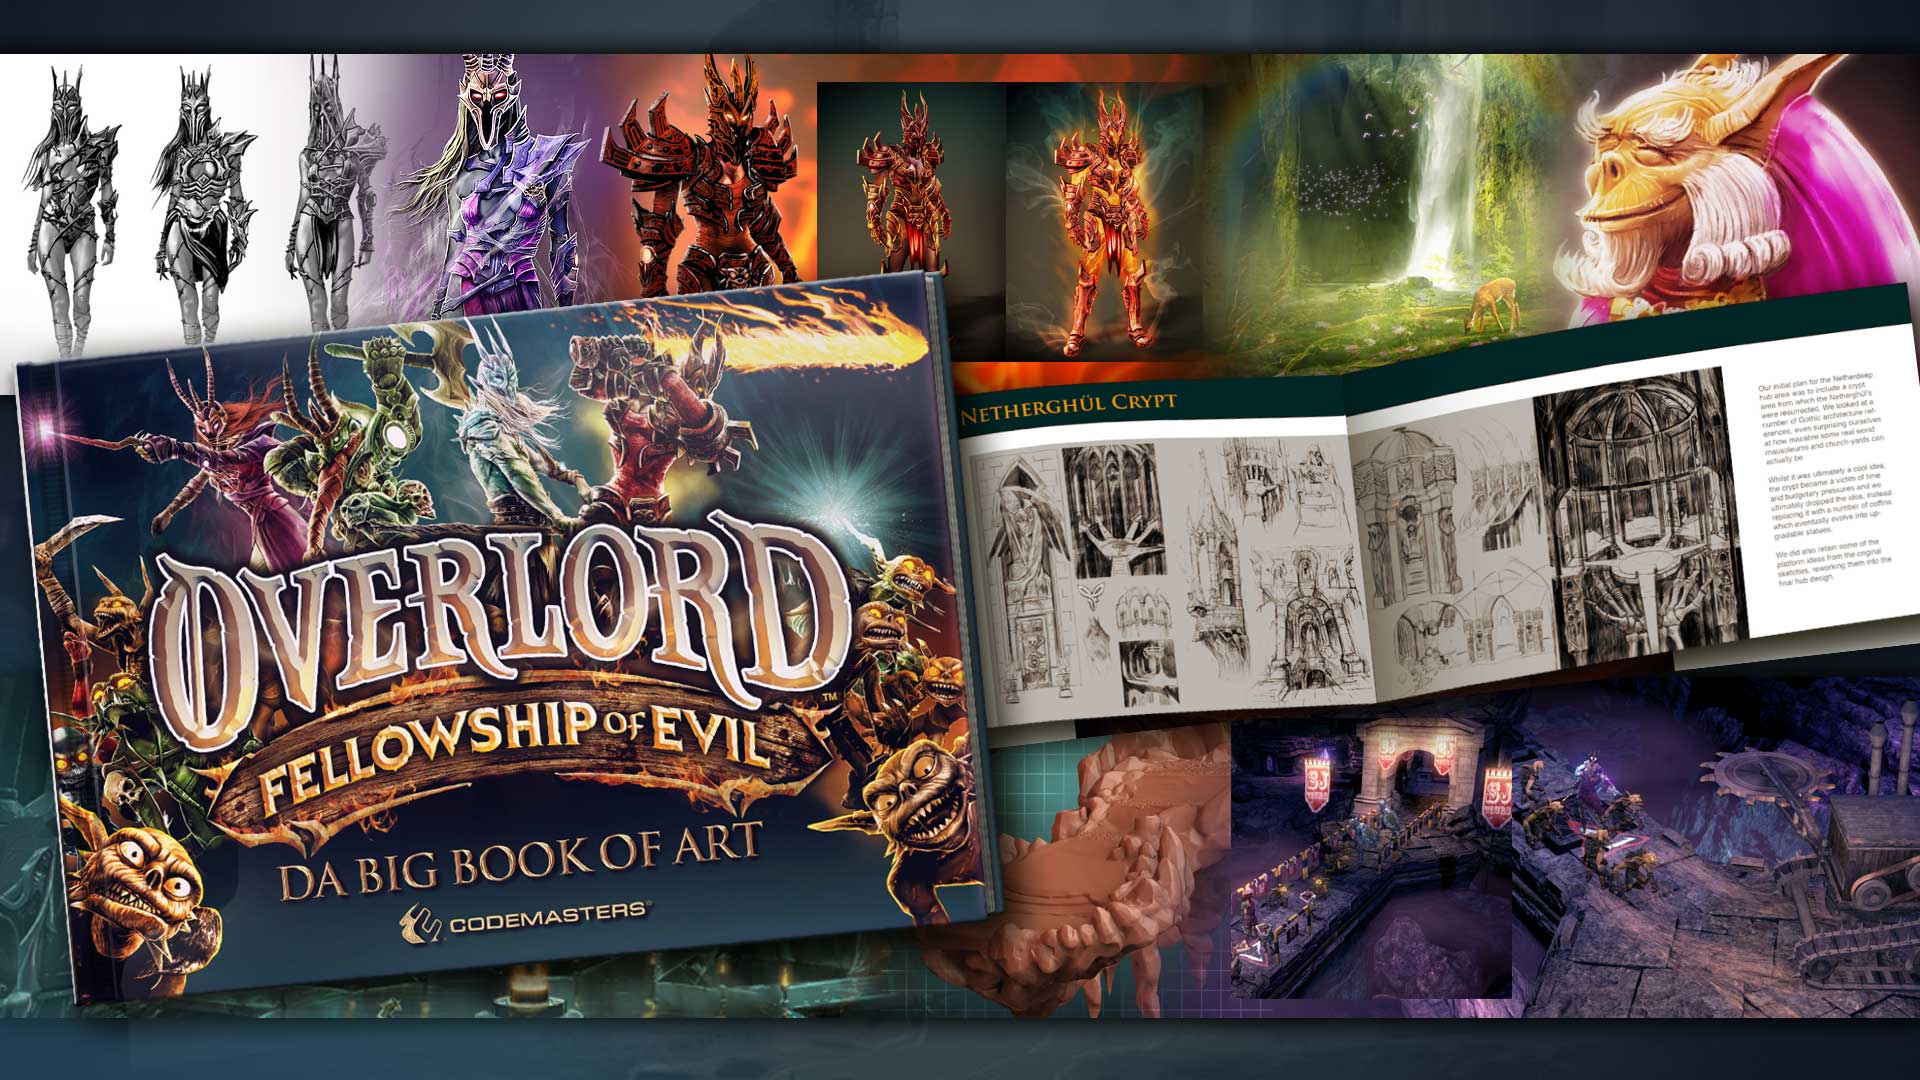 [$ 112.98] Overlord: Fellowship of Evil + Preorder Bonus Steam Gift